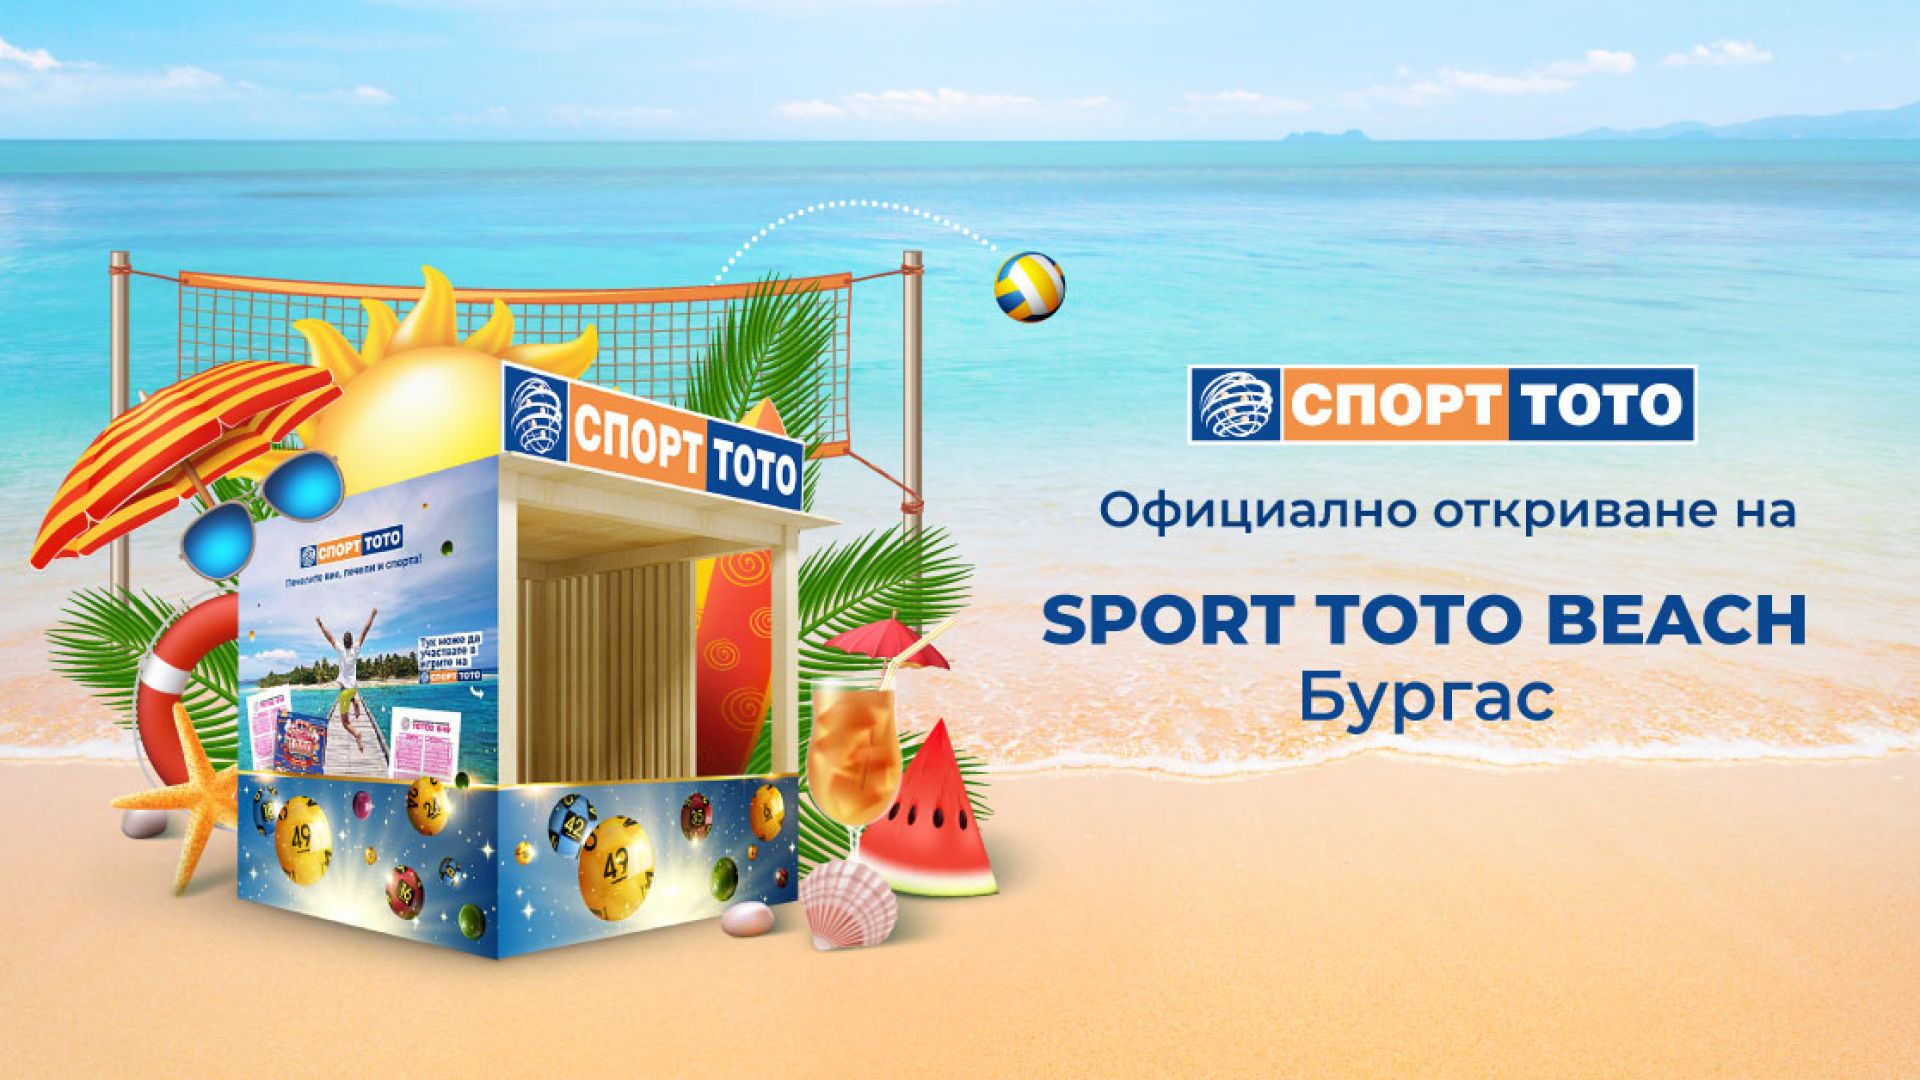 Спорт Тото даде старт на дългоочакваното лято директно от плажа в Бургас!